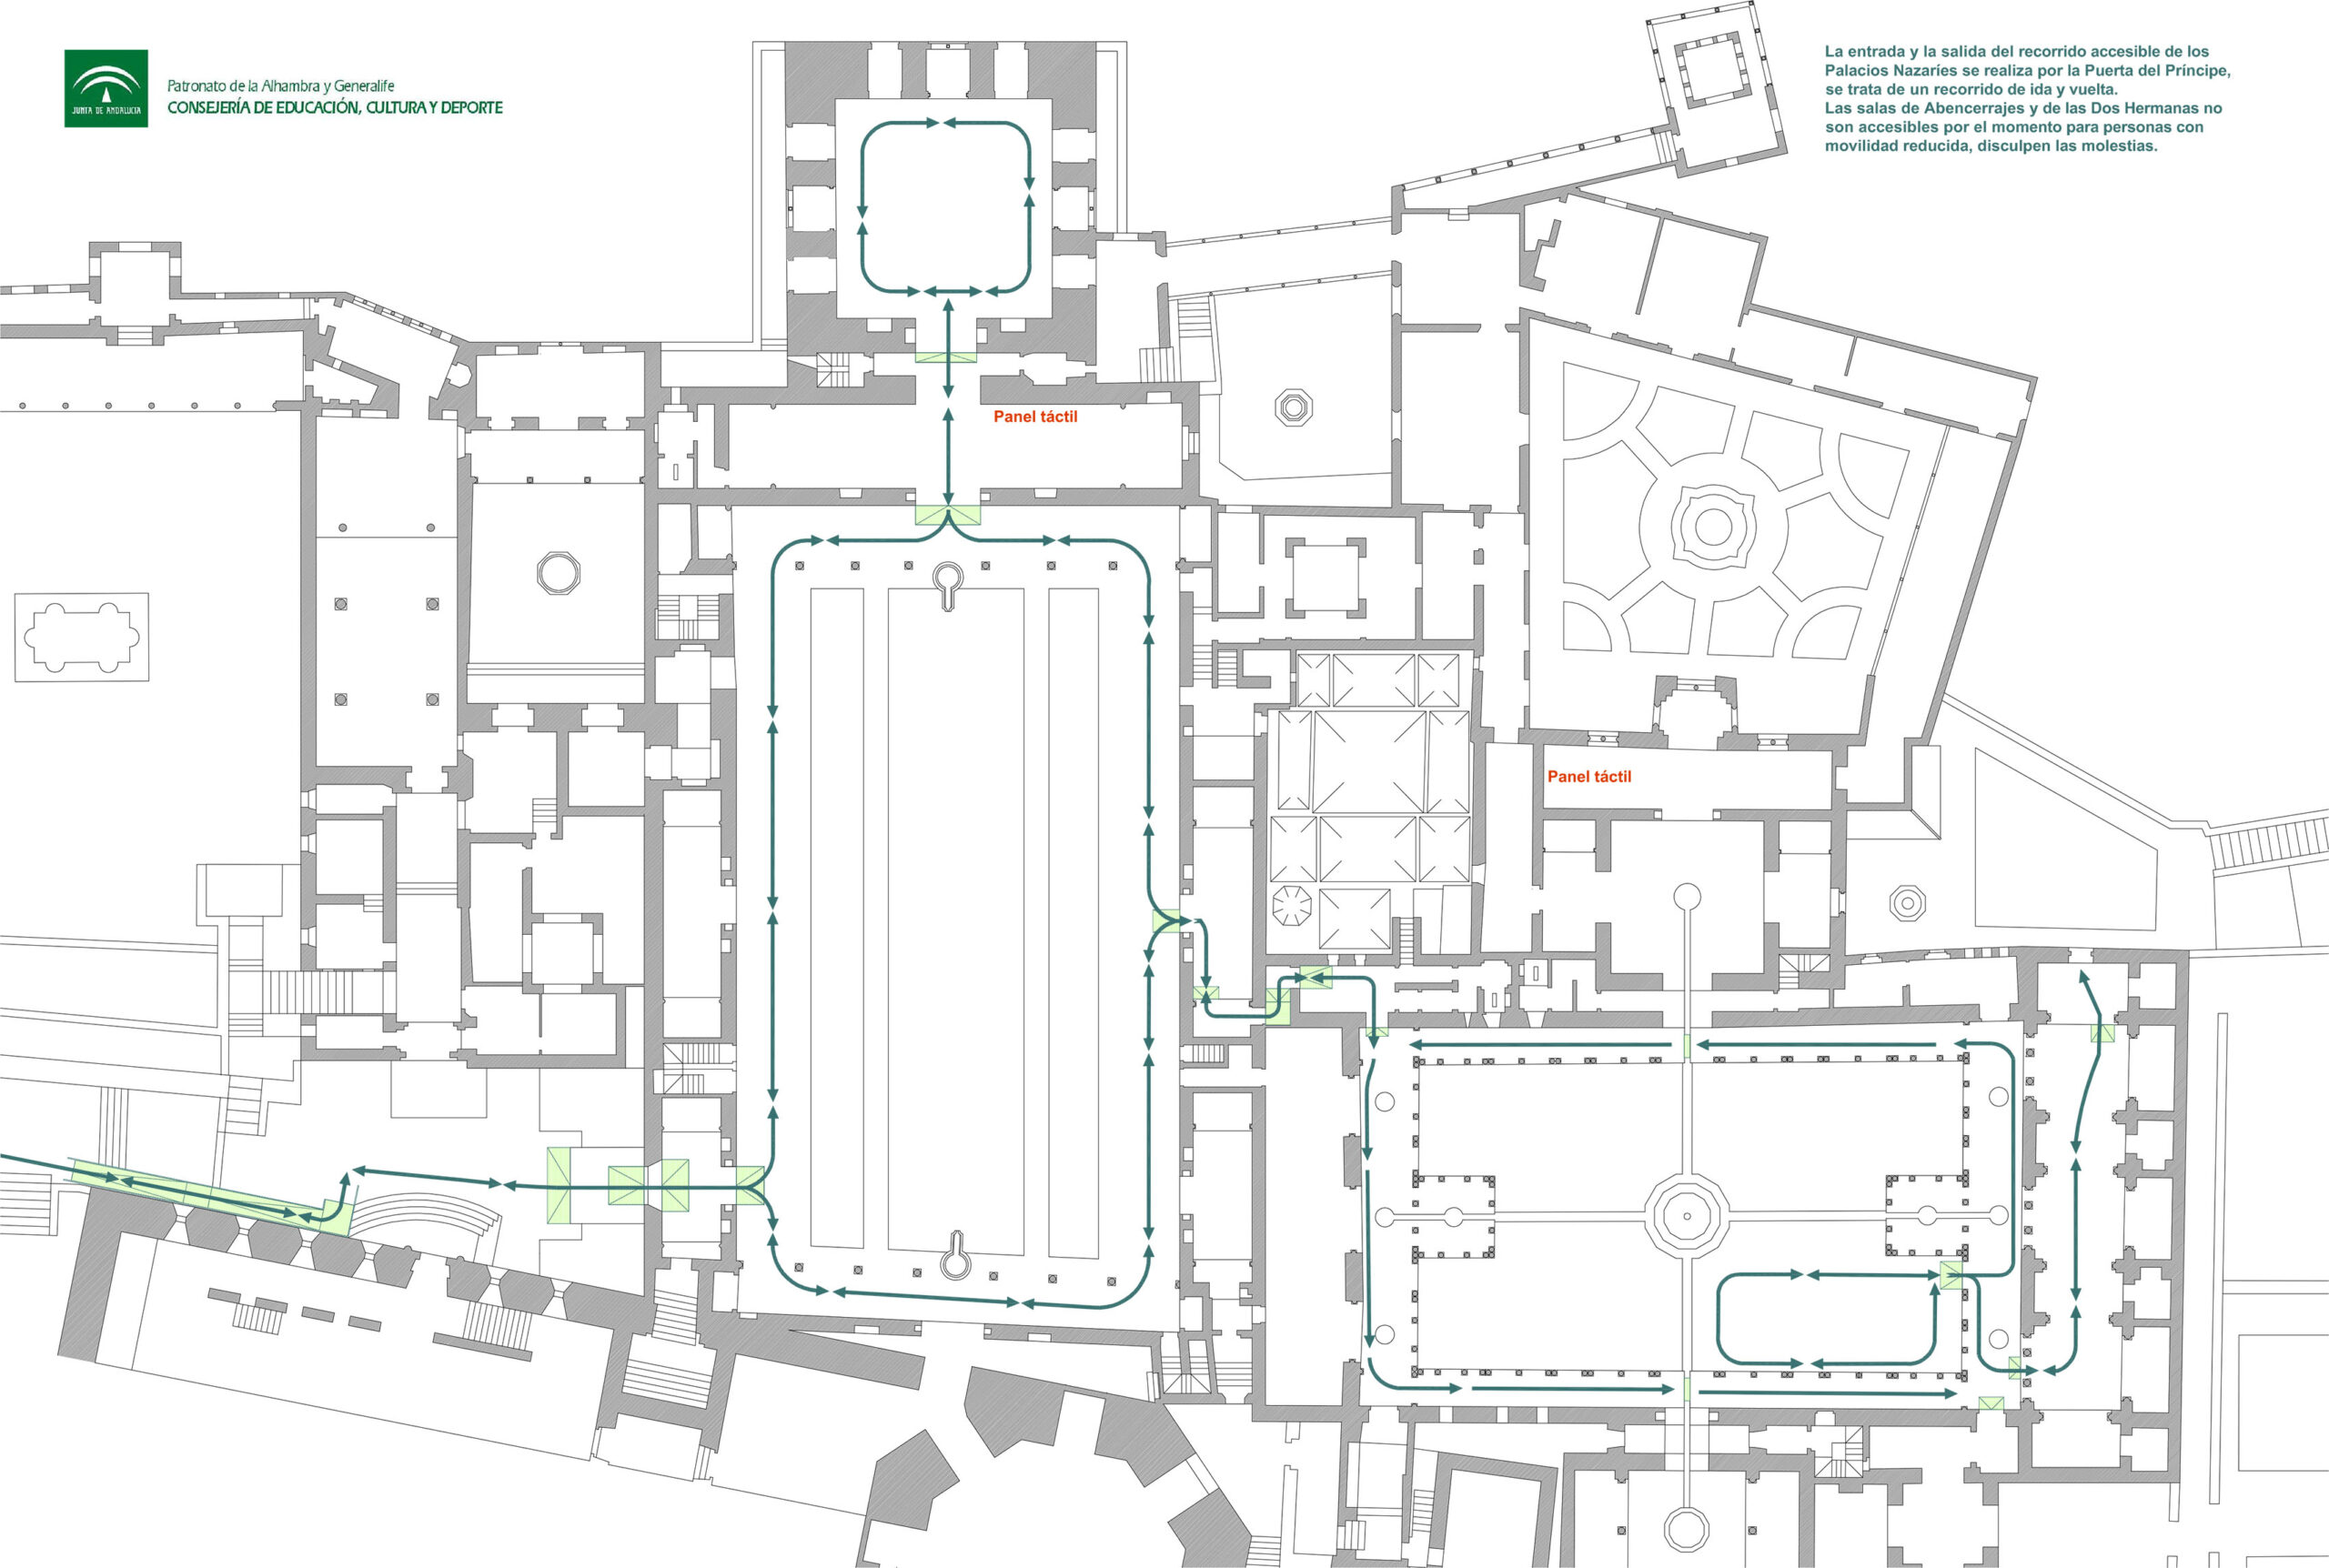 Mapa del recorrido de los Palacios Nazaríes de la Alhambra para personas con discapacidad